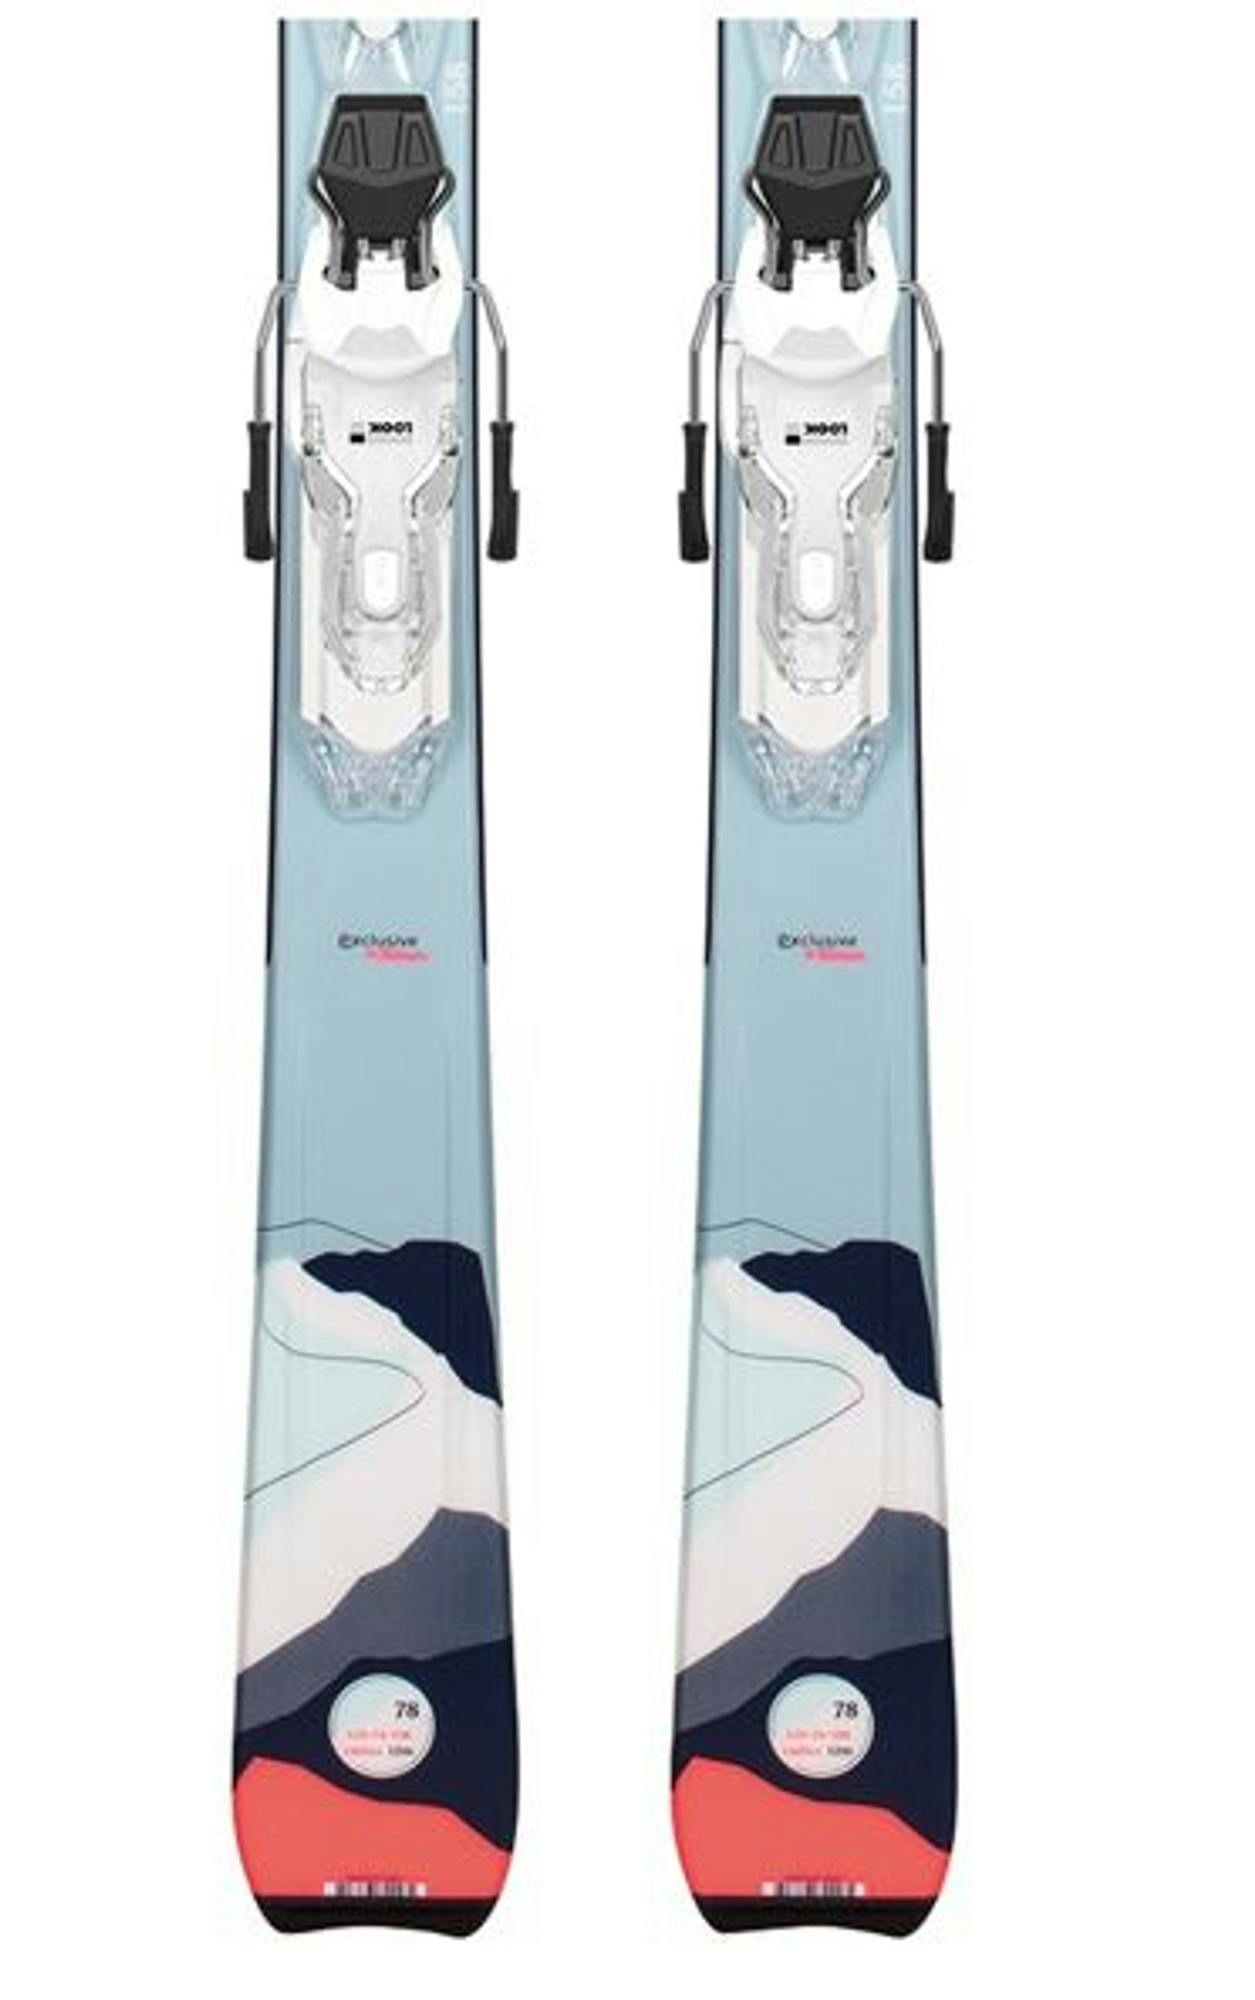 Dynastar E 4X4 2 Skis + Xpress 10 GW Ski Bindings · Women's · 2023 · 144 cm